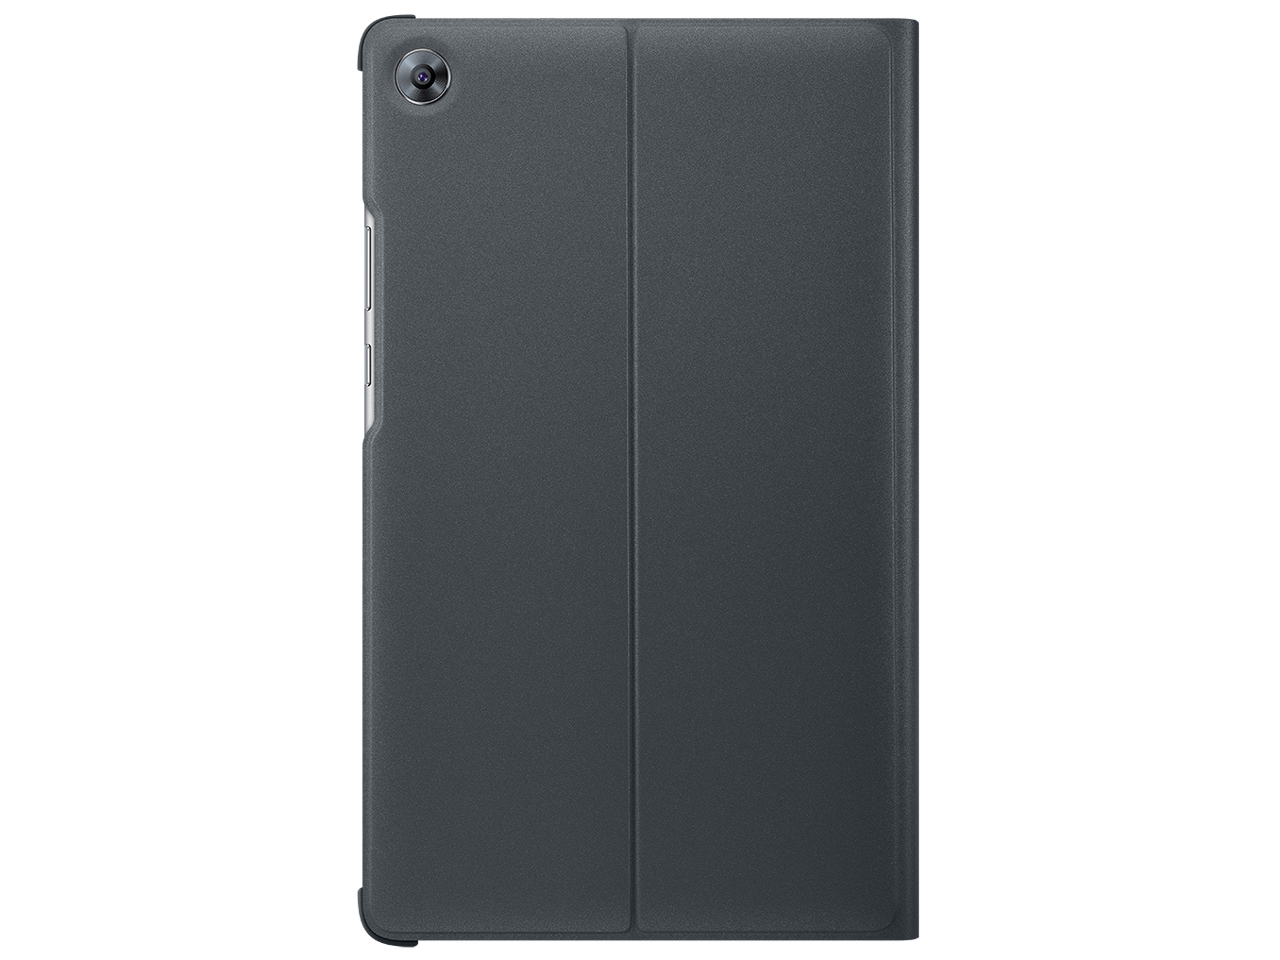 価格.com - 『本体 オリジナルスマートカバー装着時1』 MediaPad M5 LTEモデル SHT-AL09 SIMフリー の製品画像